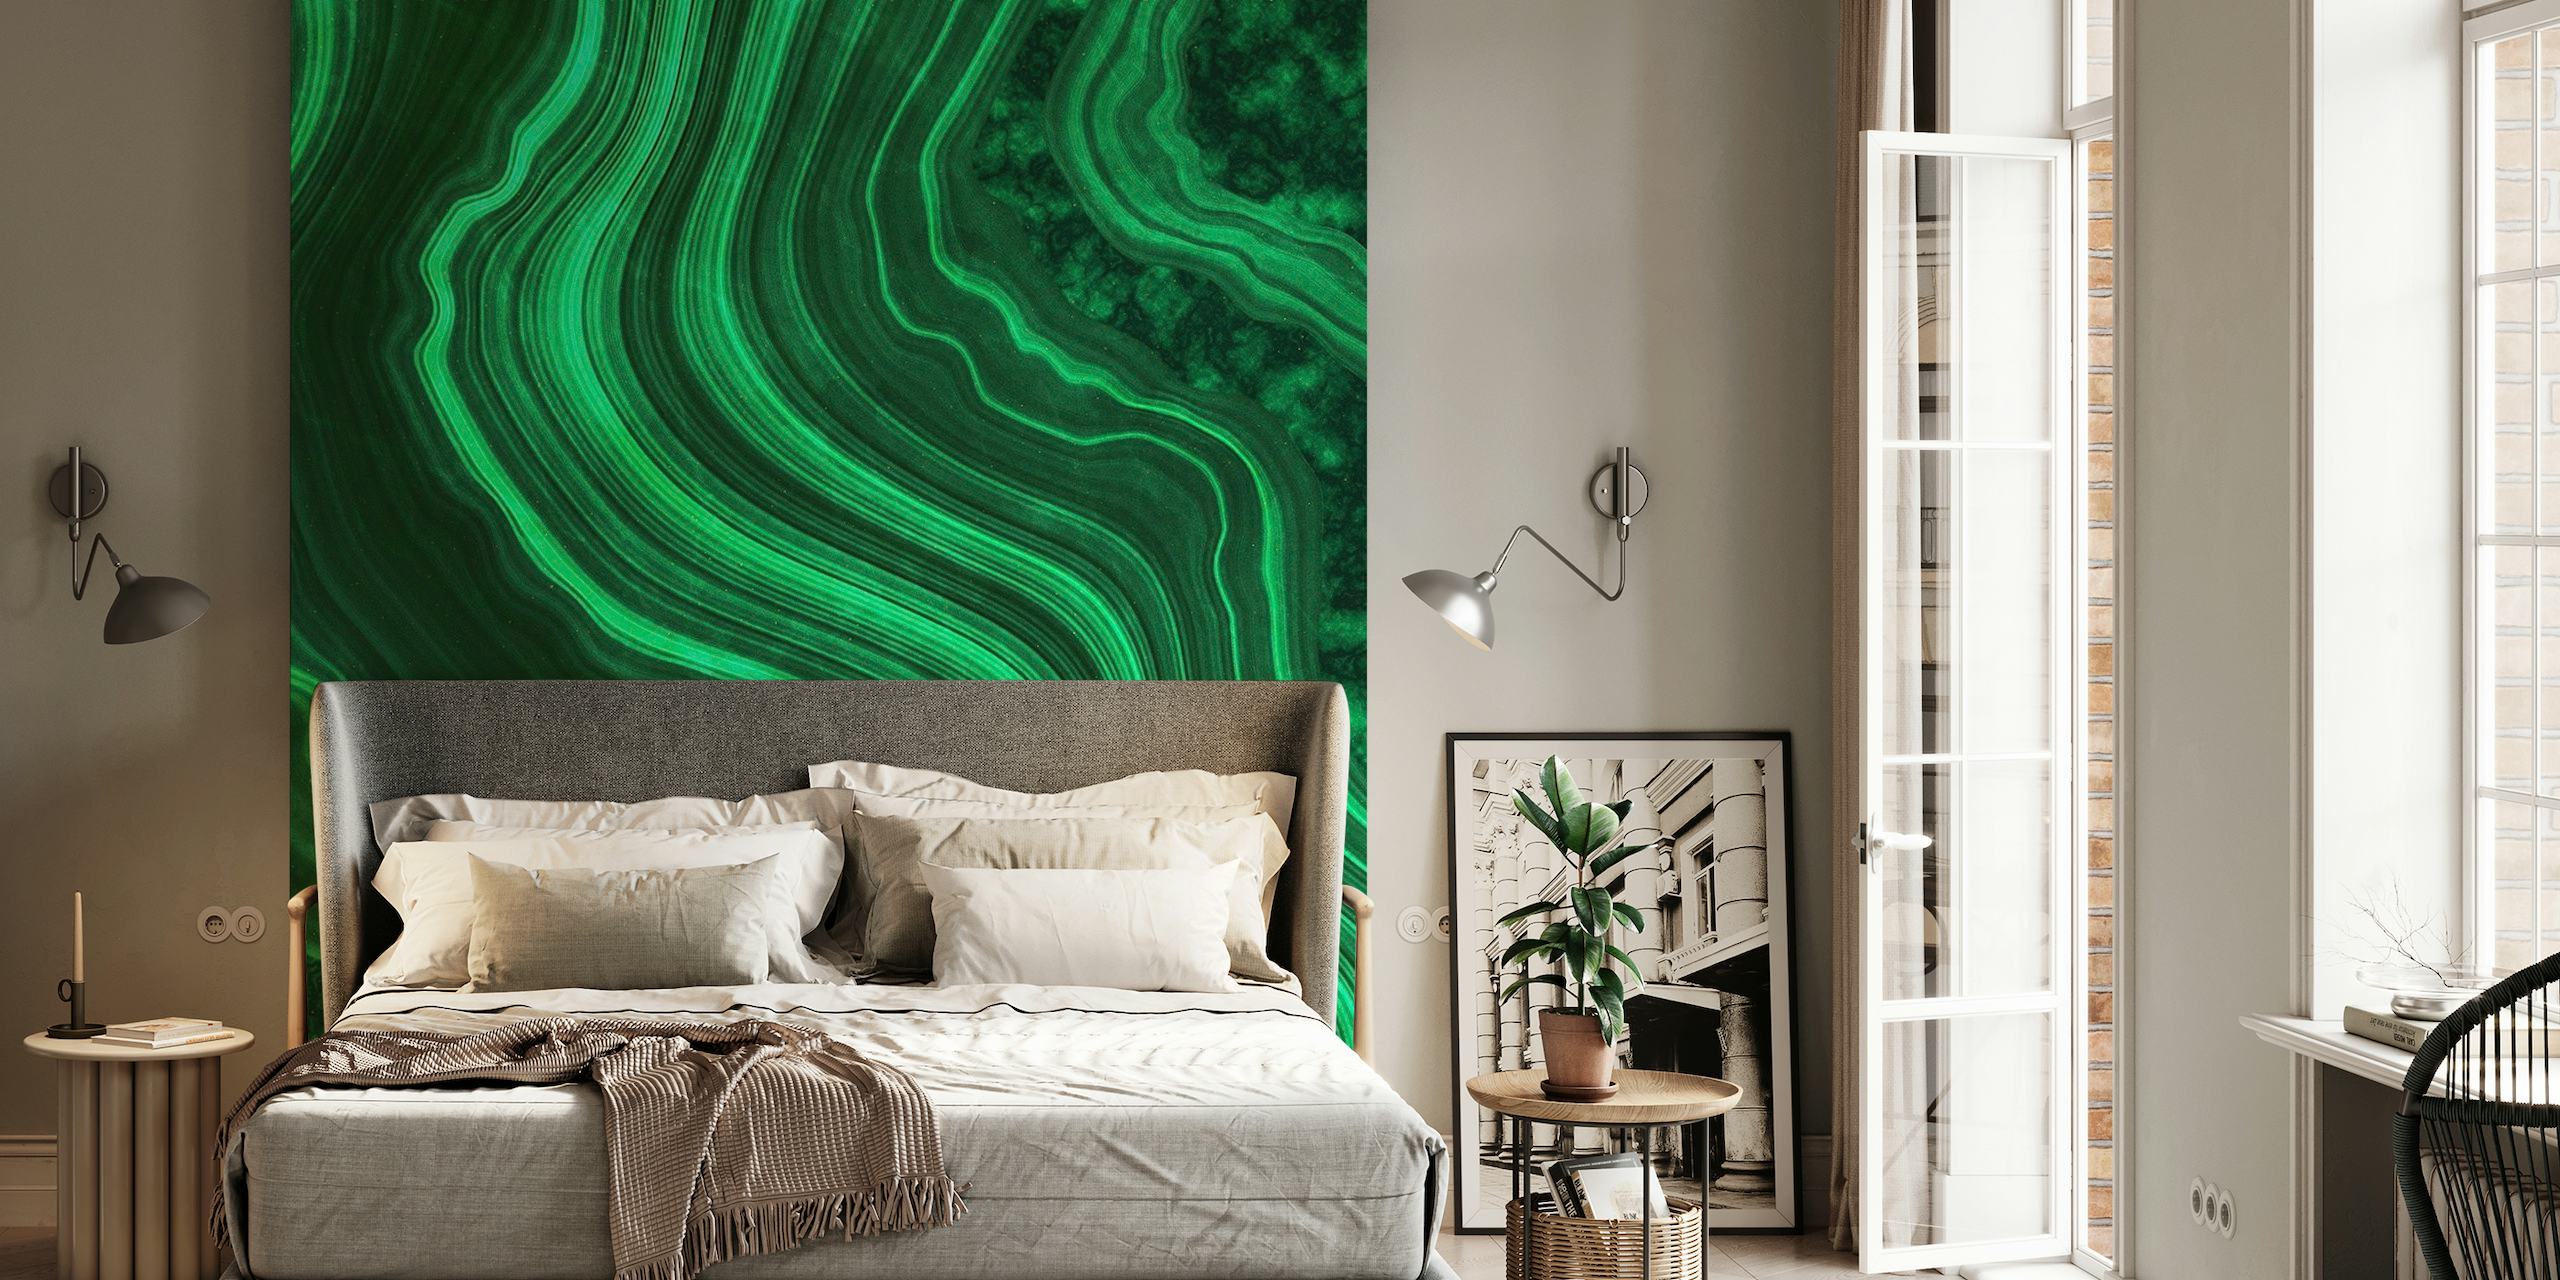 Textura de mármol verde esmeralda con motivos arremolinados para fotomural